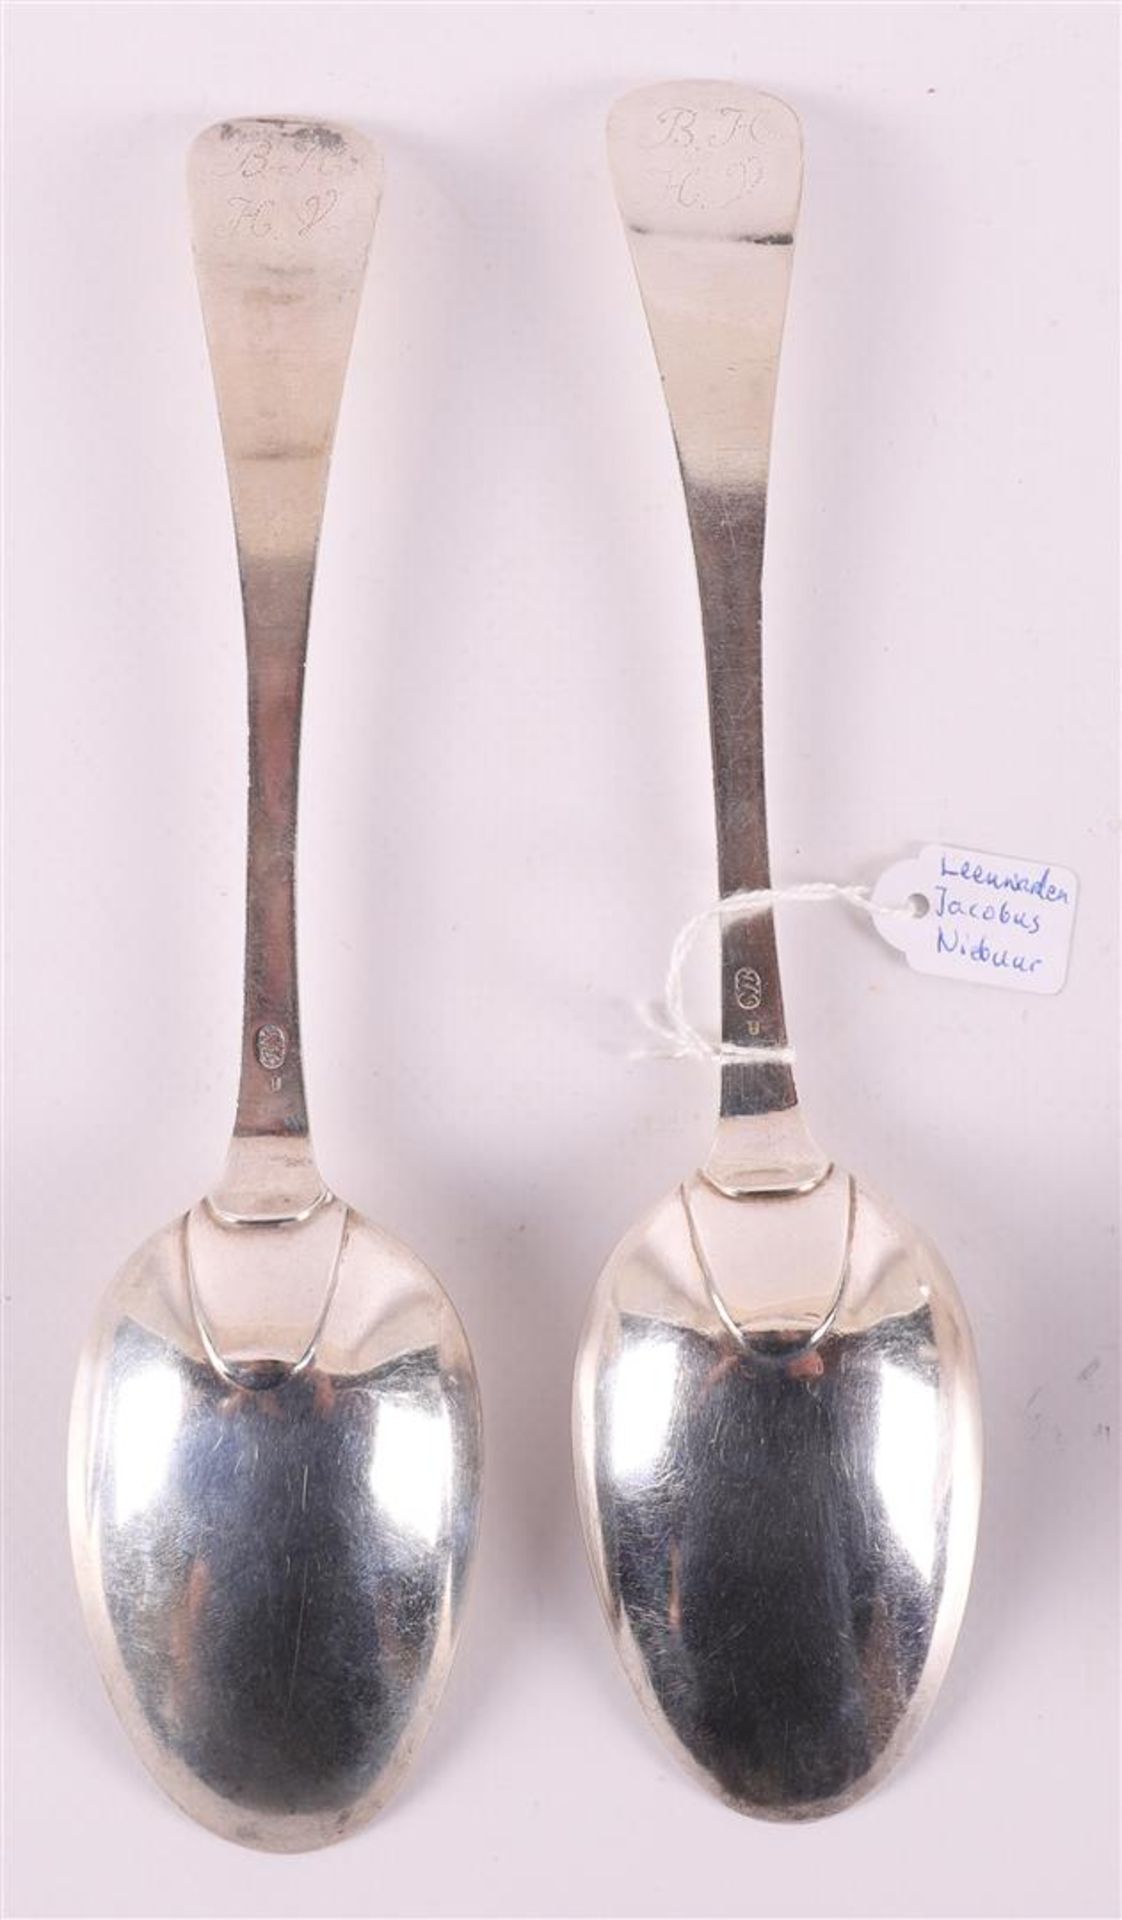 Four first grade content 925/1000 silver spoons, Friesland, Leeuwarden, - Bild 5 aus 7